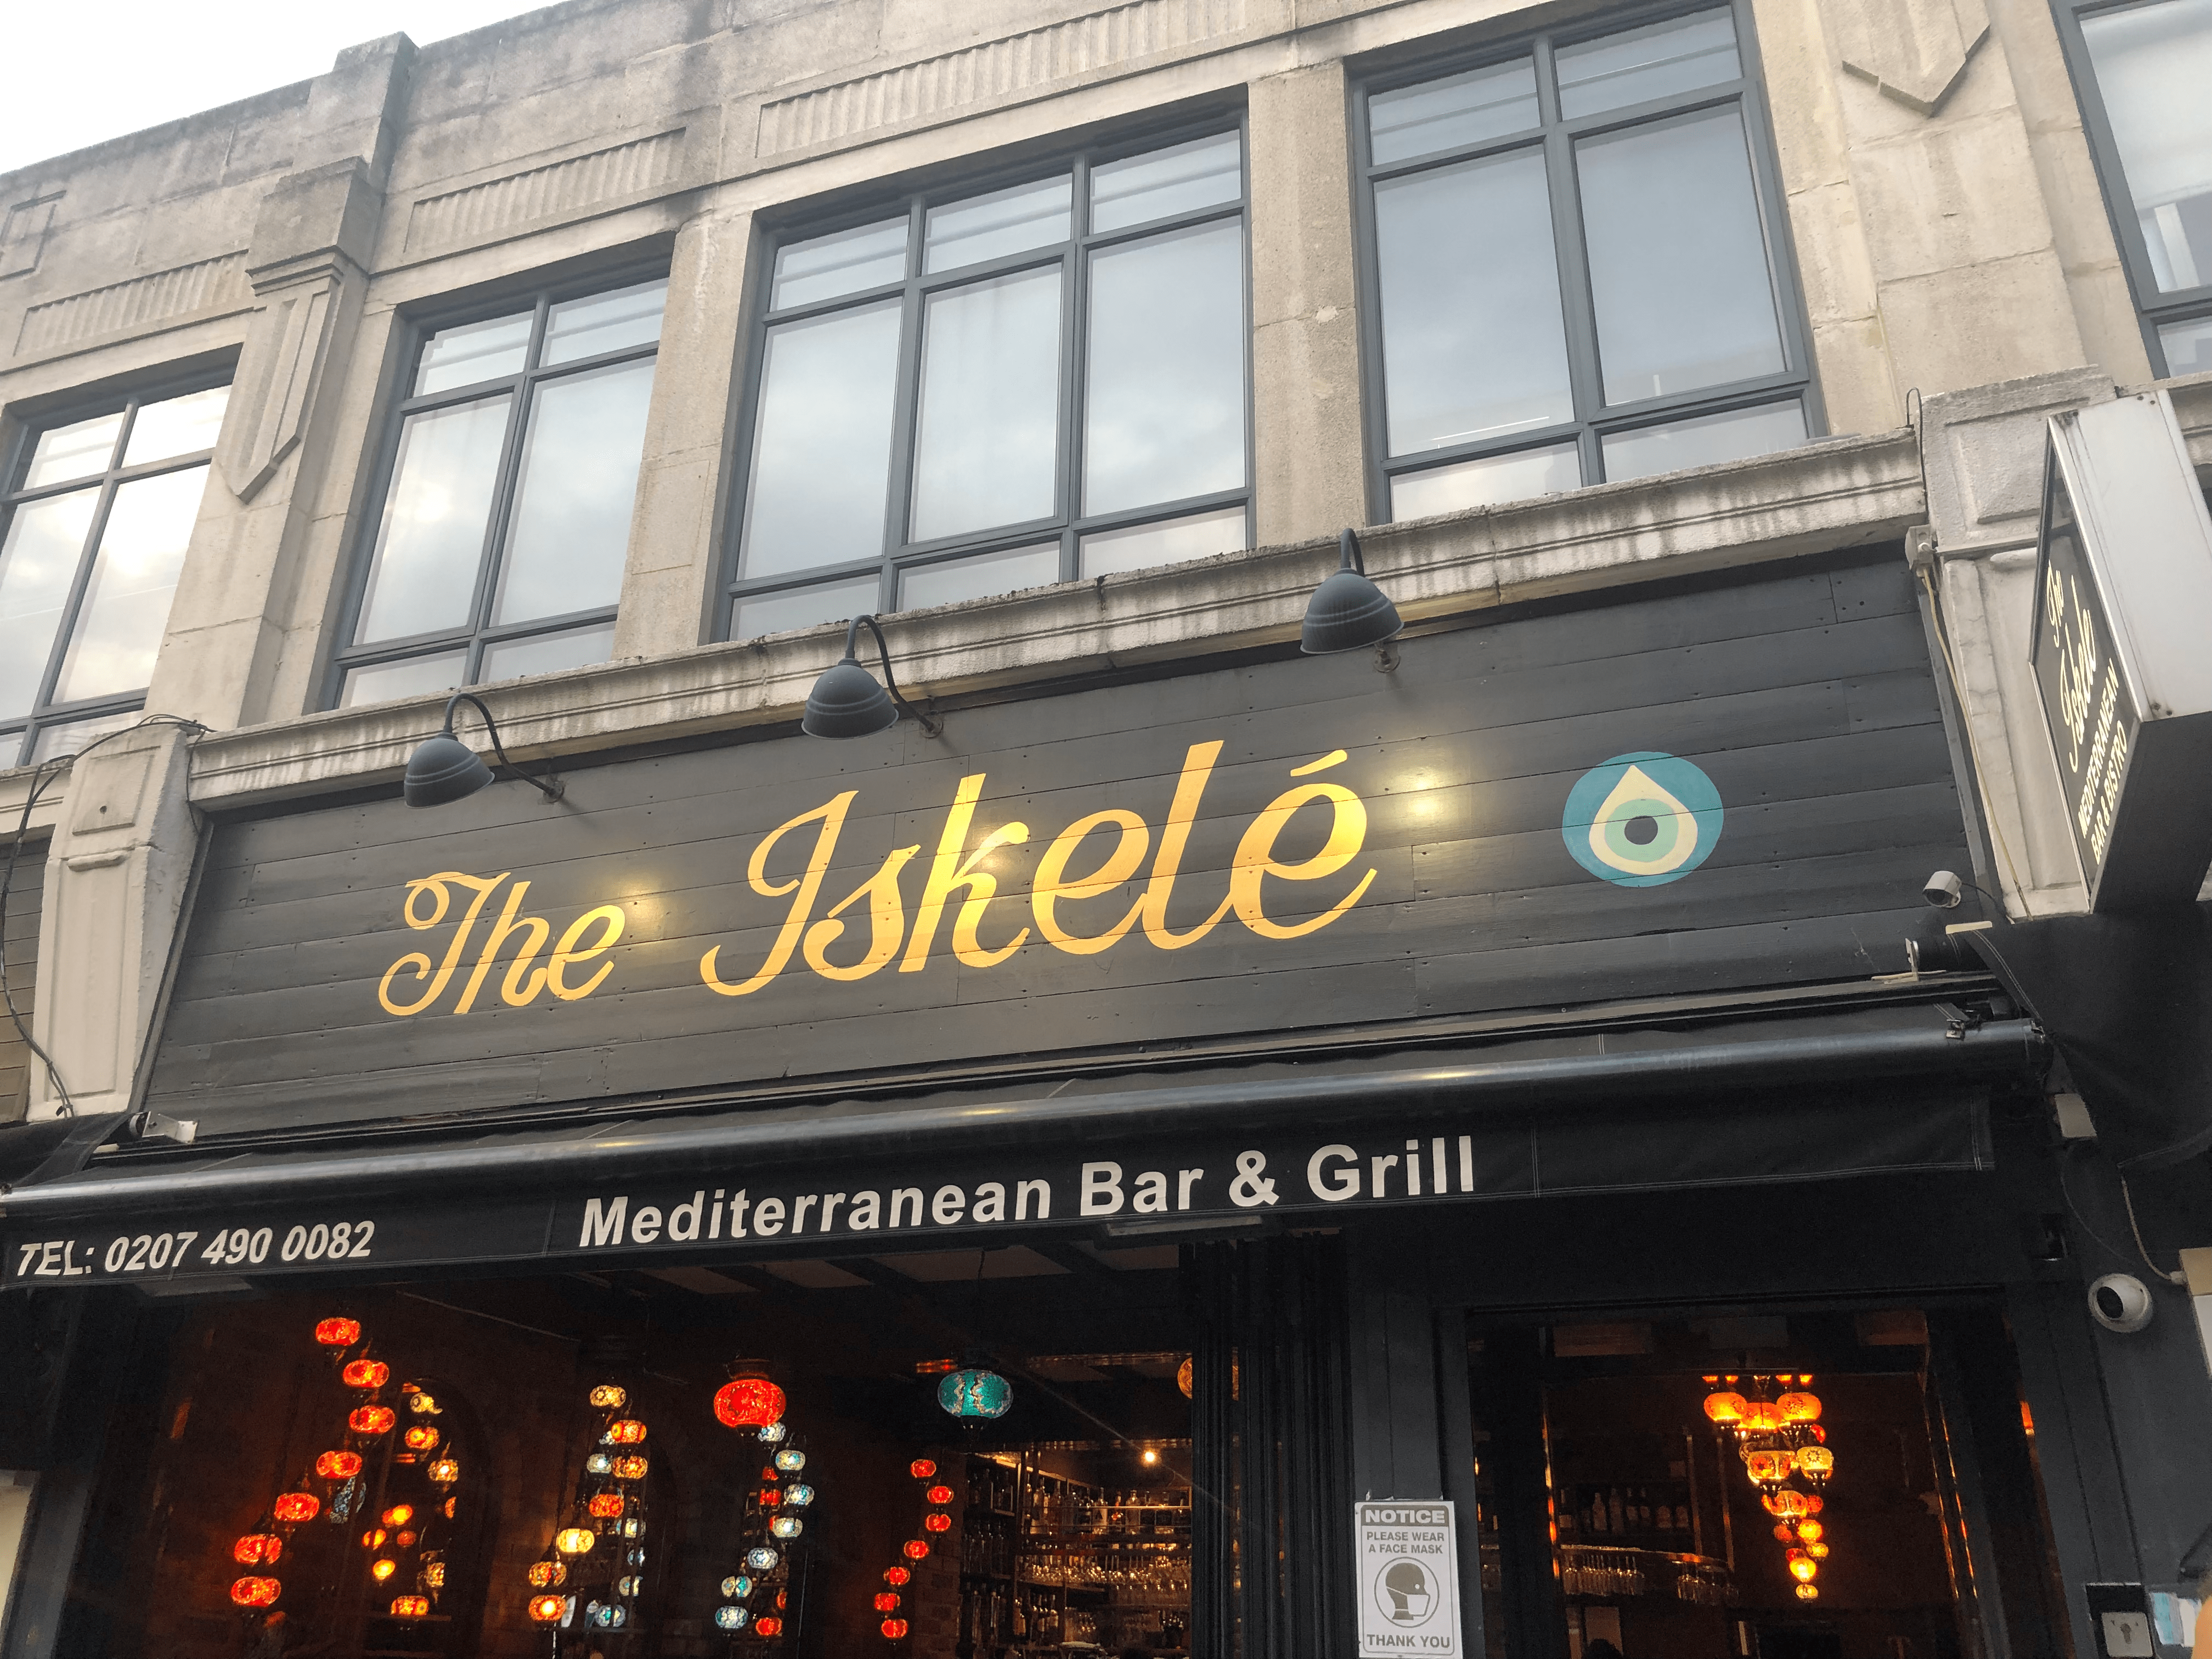 The Iskelé Restaurant & Bar